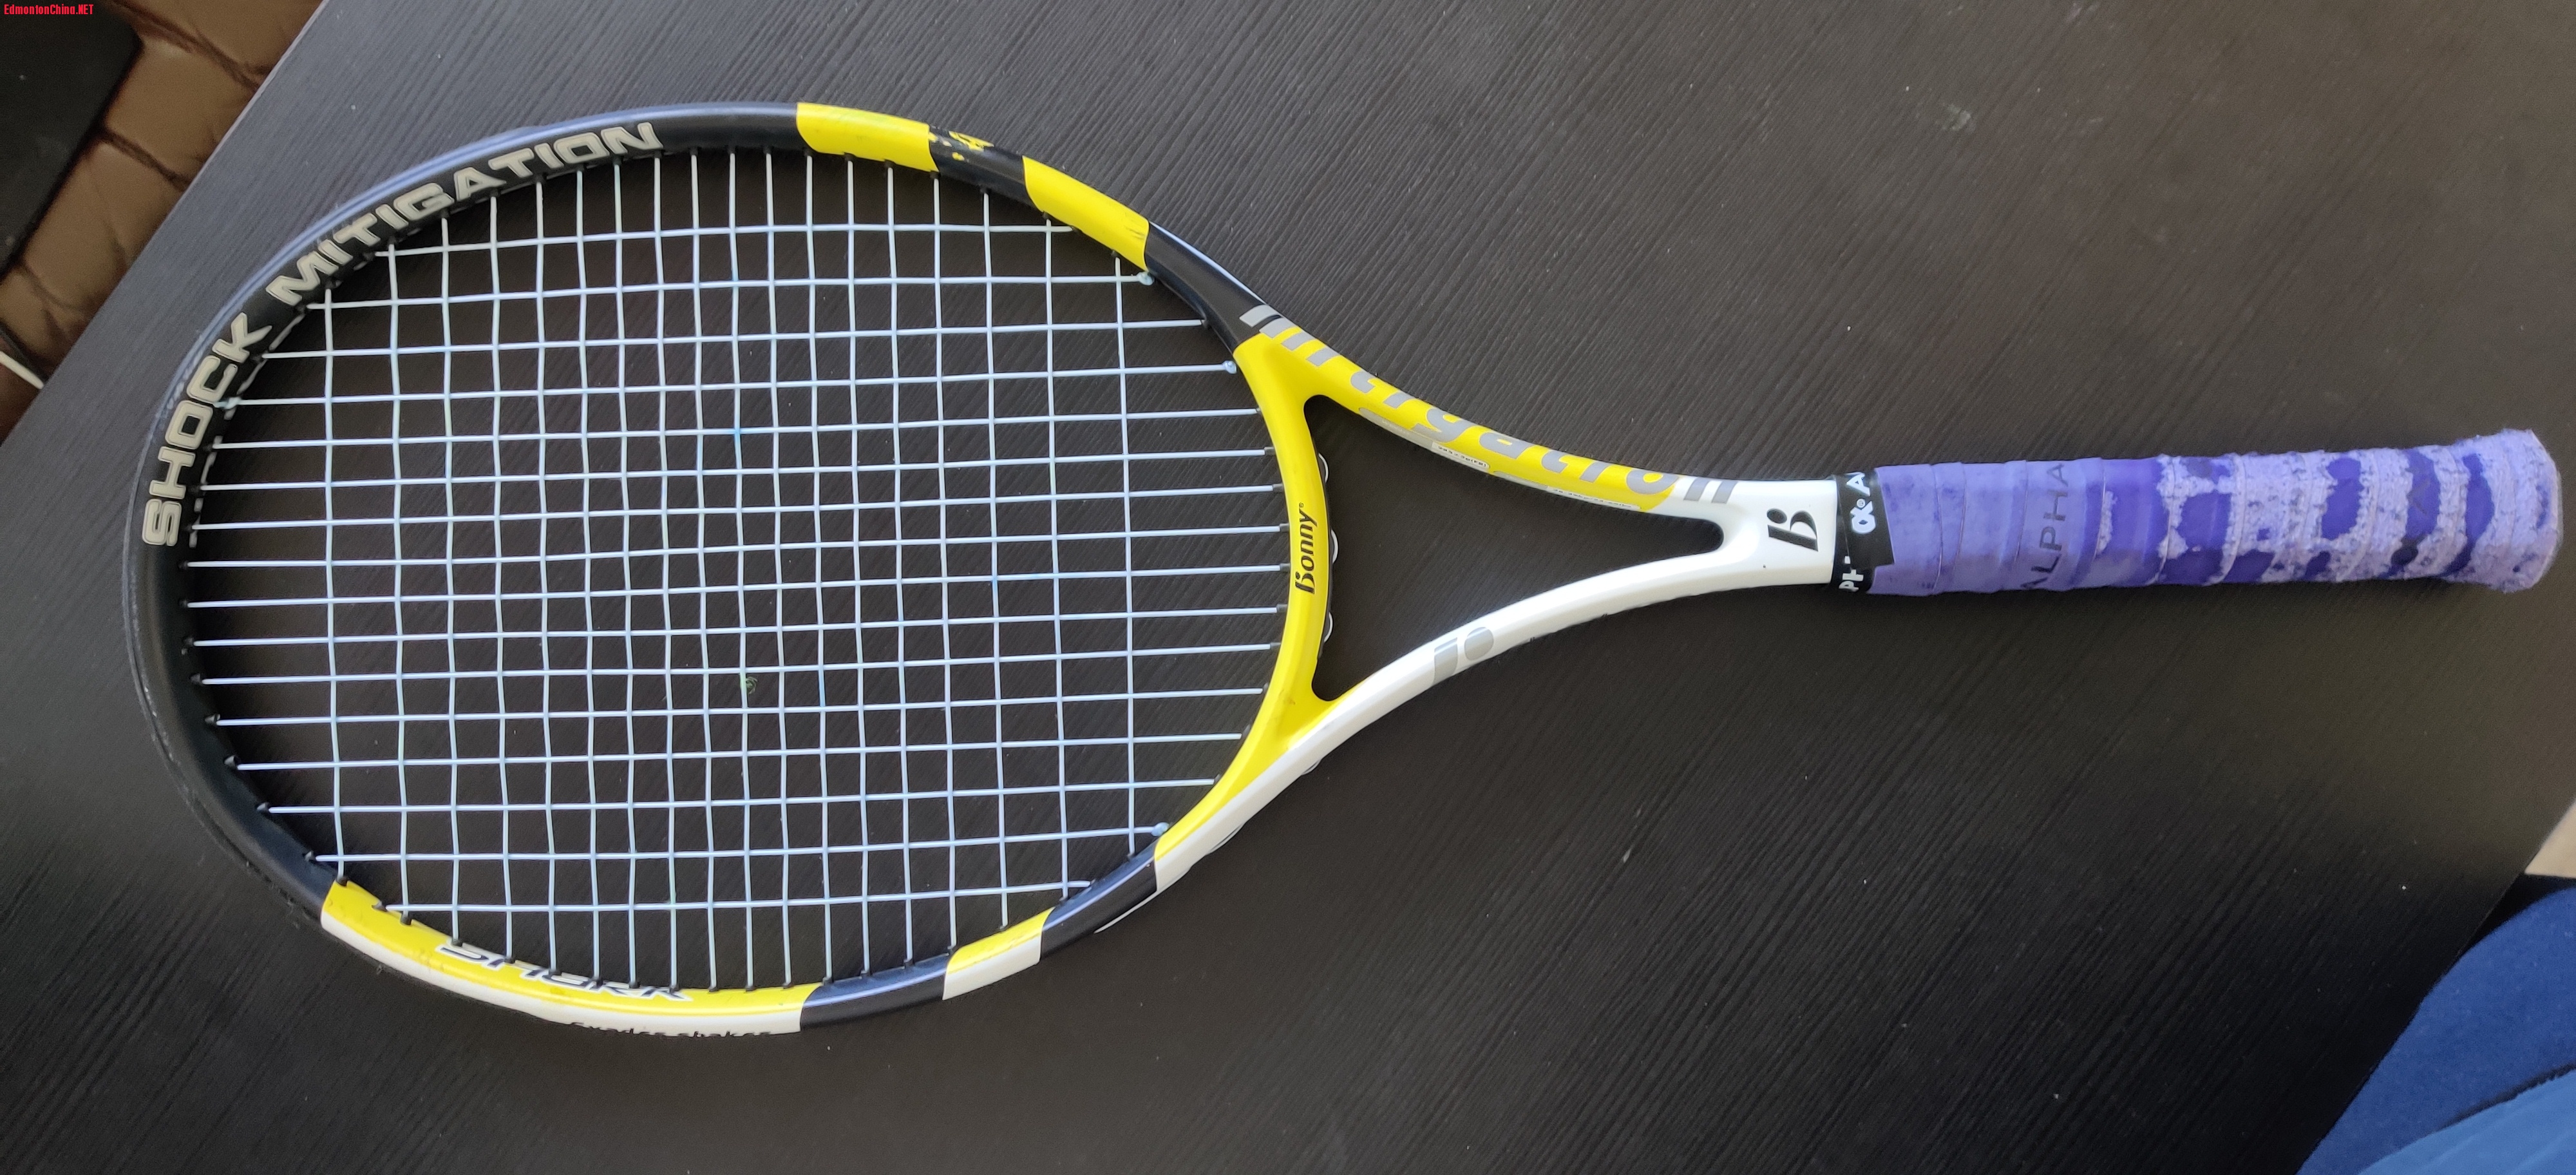 Tennis racket.jpg